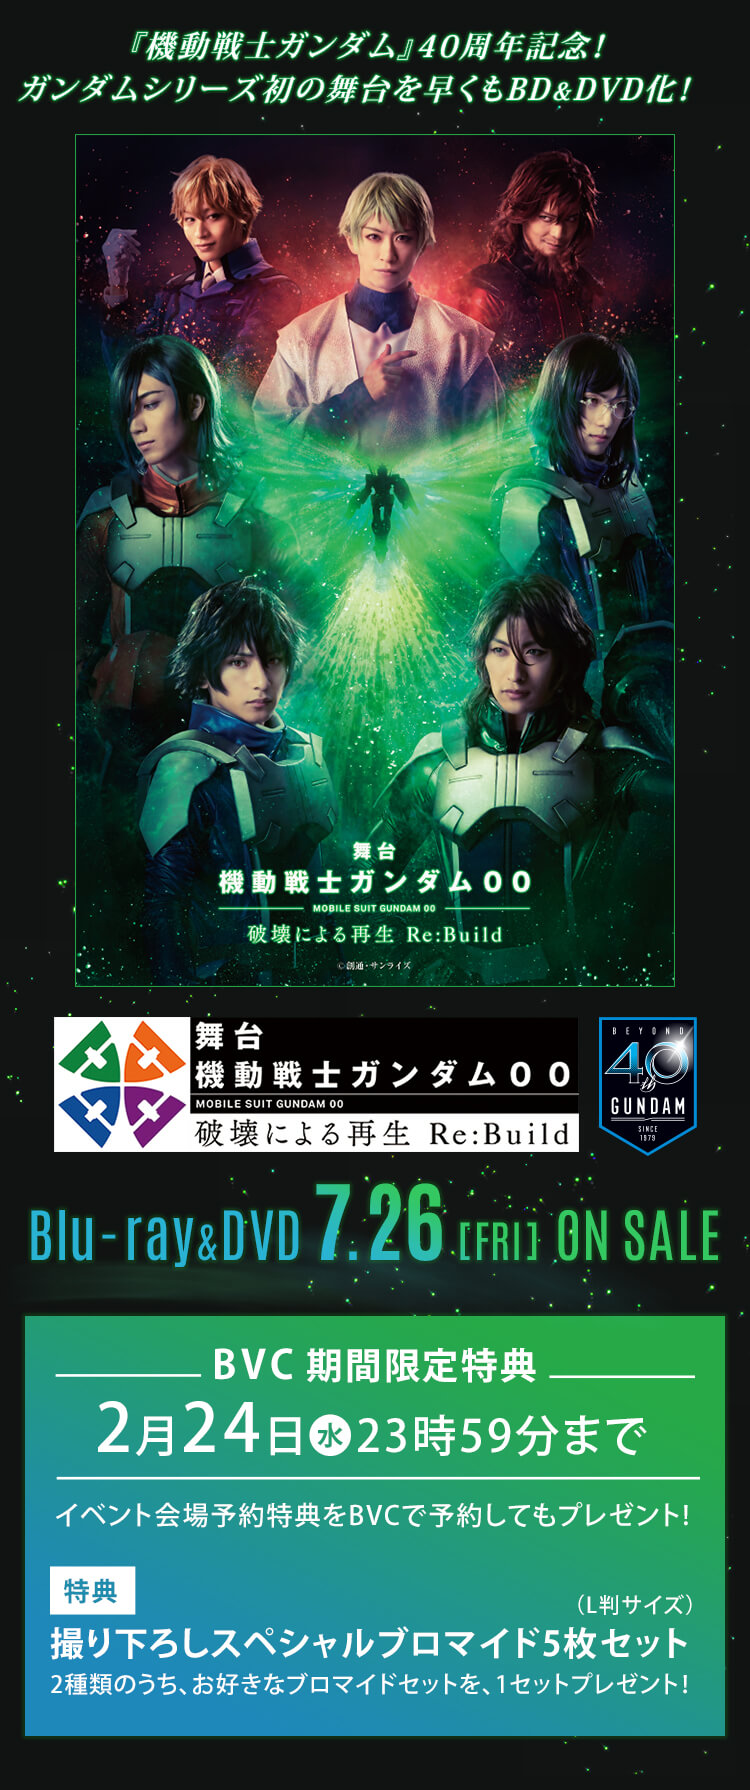 『機動戦士ガンダム』40周年記念！ ガンダムシリーズ初の舞台を早くもBD&DVD化！ 舞台『機動戦士ガンダム00 -破壊による再生 Re:Build-』Blu-ray&DVD 7月26日(金) ON SALE